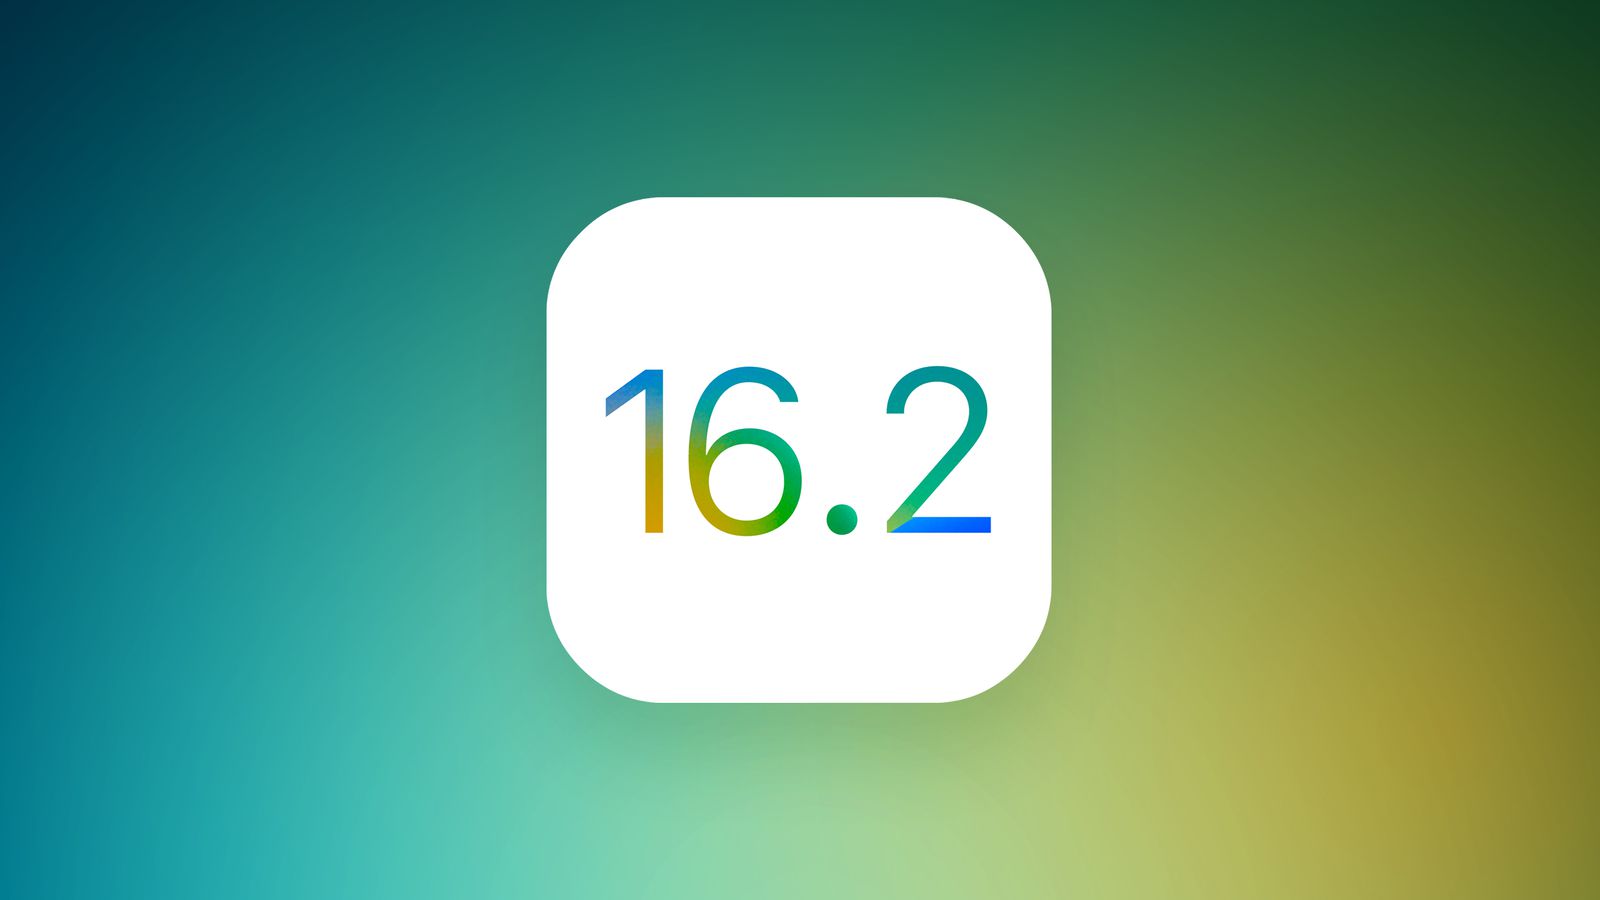 Вышла iOS 16.2 beta 4 для разработчиков